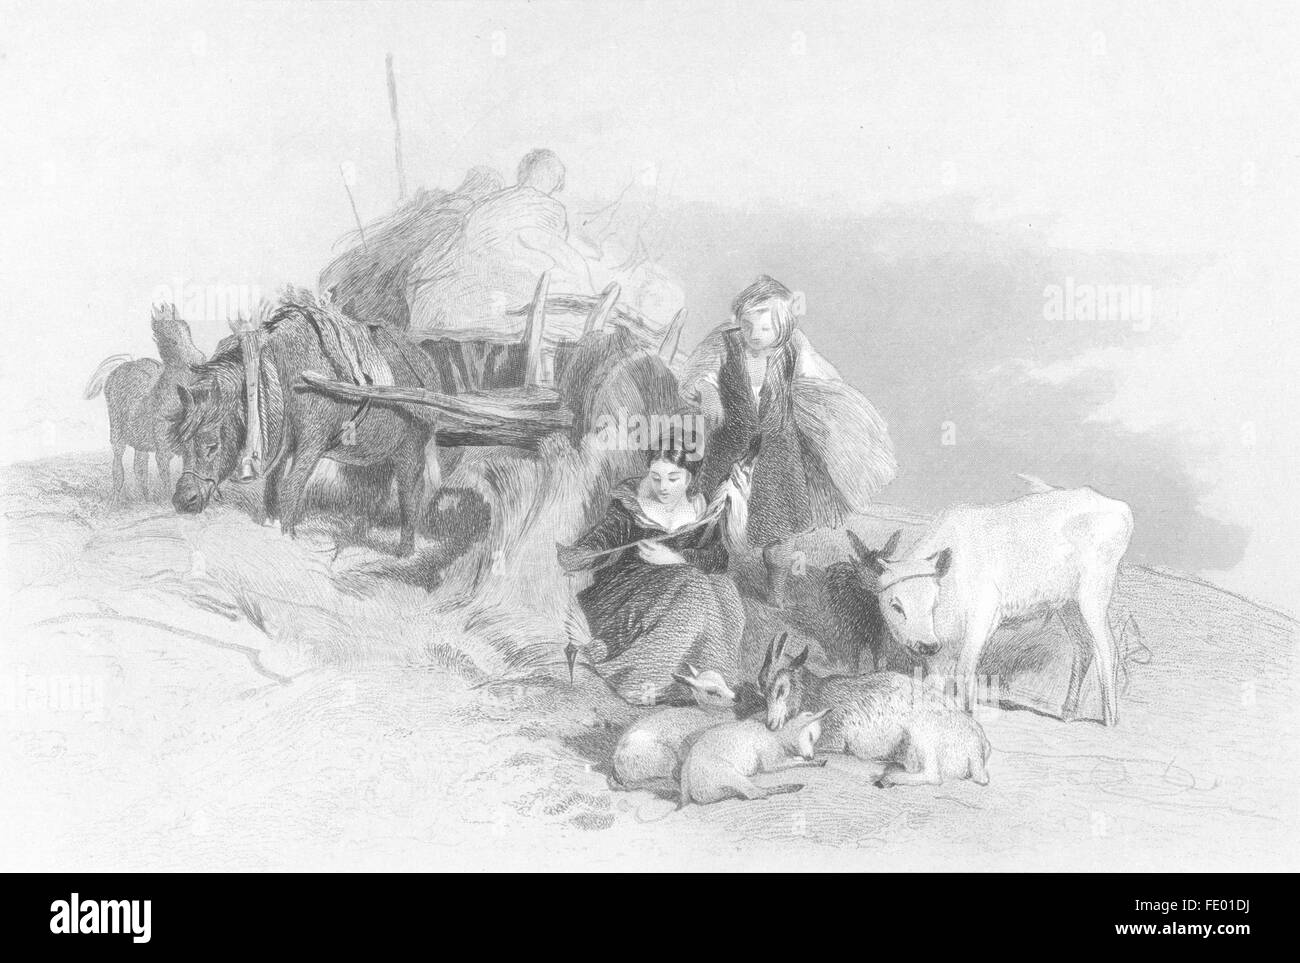 Récolte : l'agriculture à temps partiel, Highlands-Landseer écossais, antique print c1880 Banque D'Images